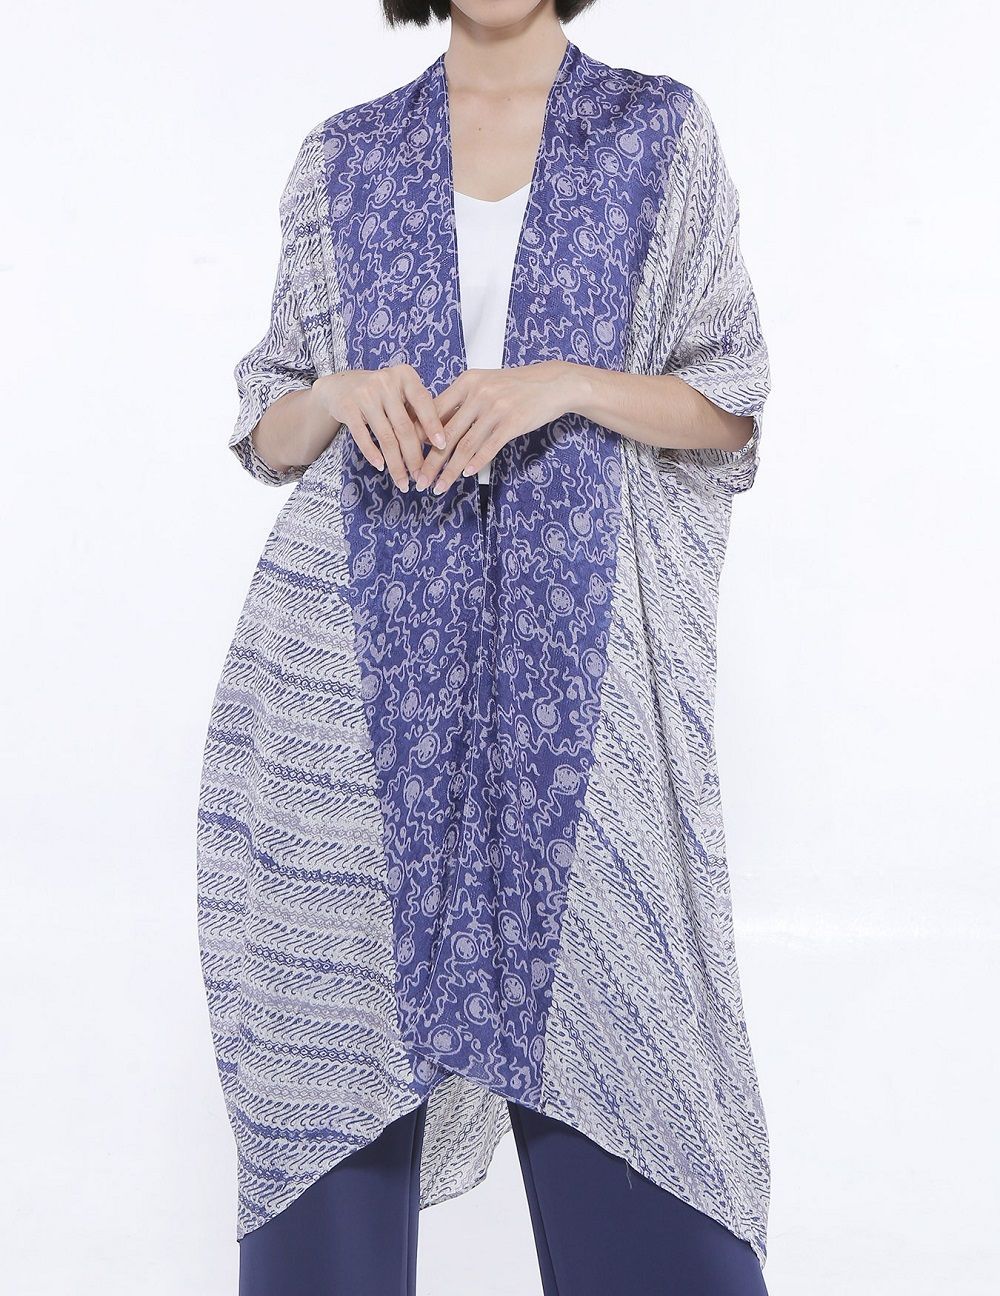 9 Model Baju Batik  Modern Wanita Terbaru 2021 Yang Kece